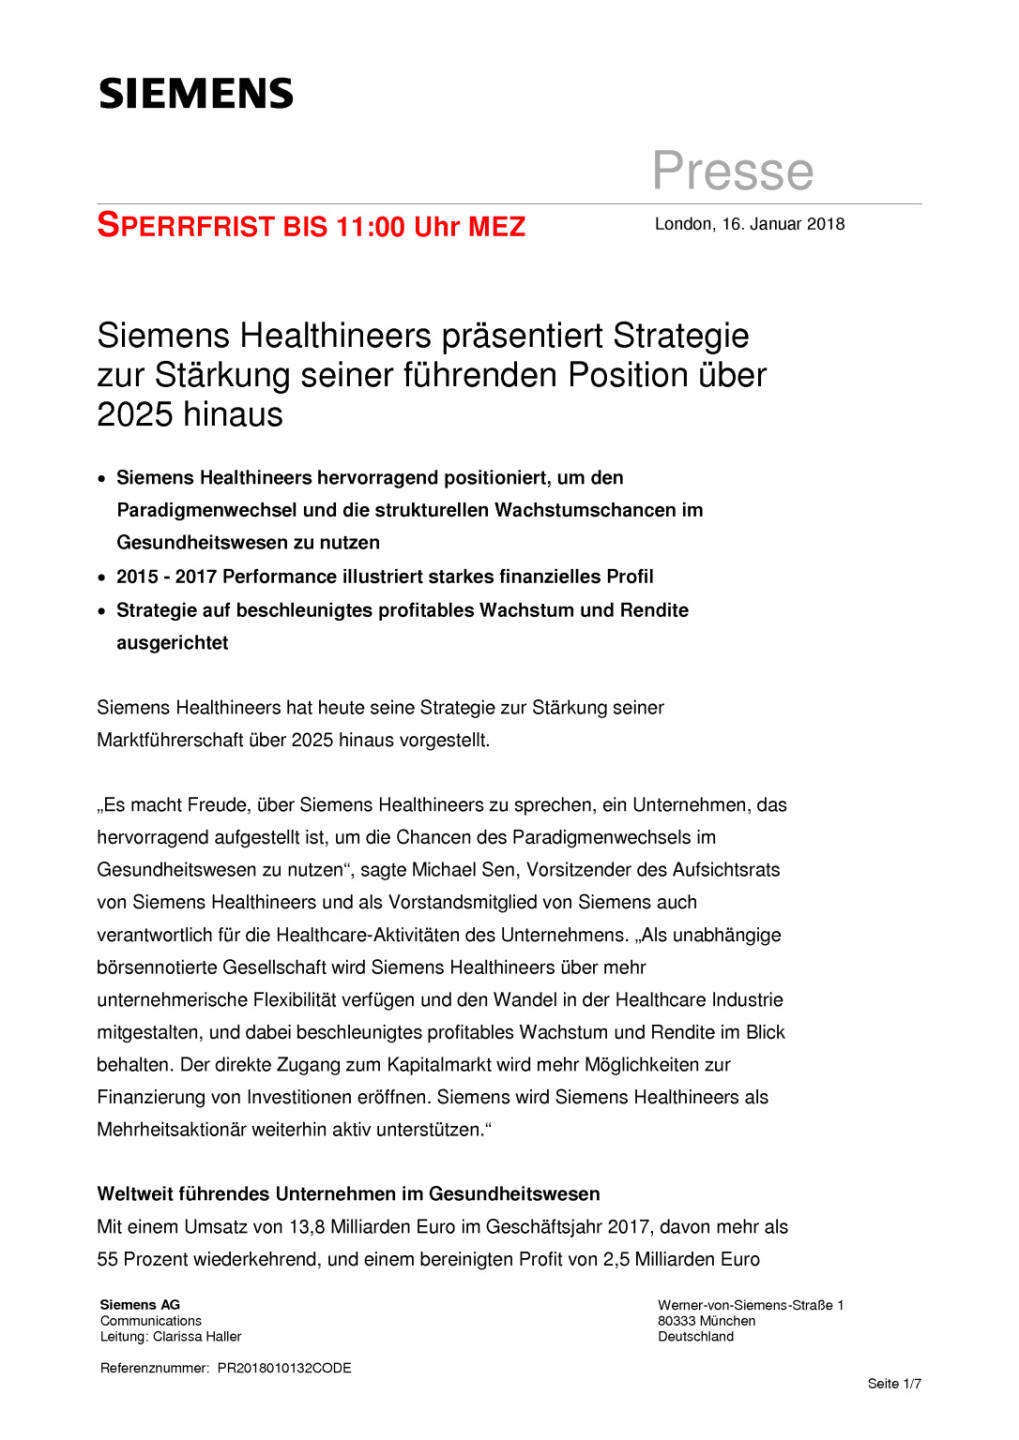 Siemens Healthineers geht an die Börse, Seite 1/7, komplettes Dokument unter http://boerse-social.com/static/uploads/file_2416_siemens_healthineers_geht_an_die_borse.pdf